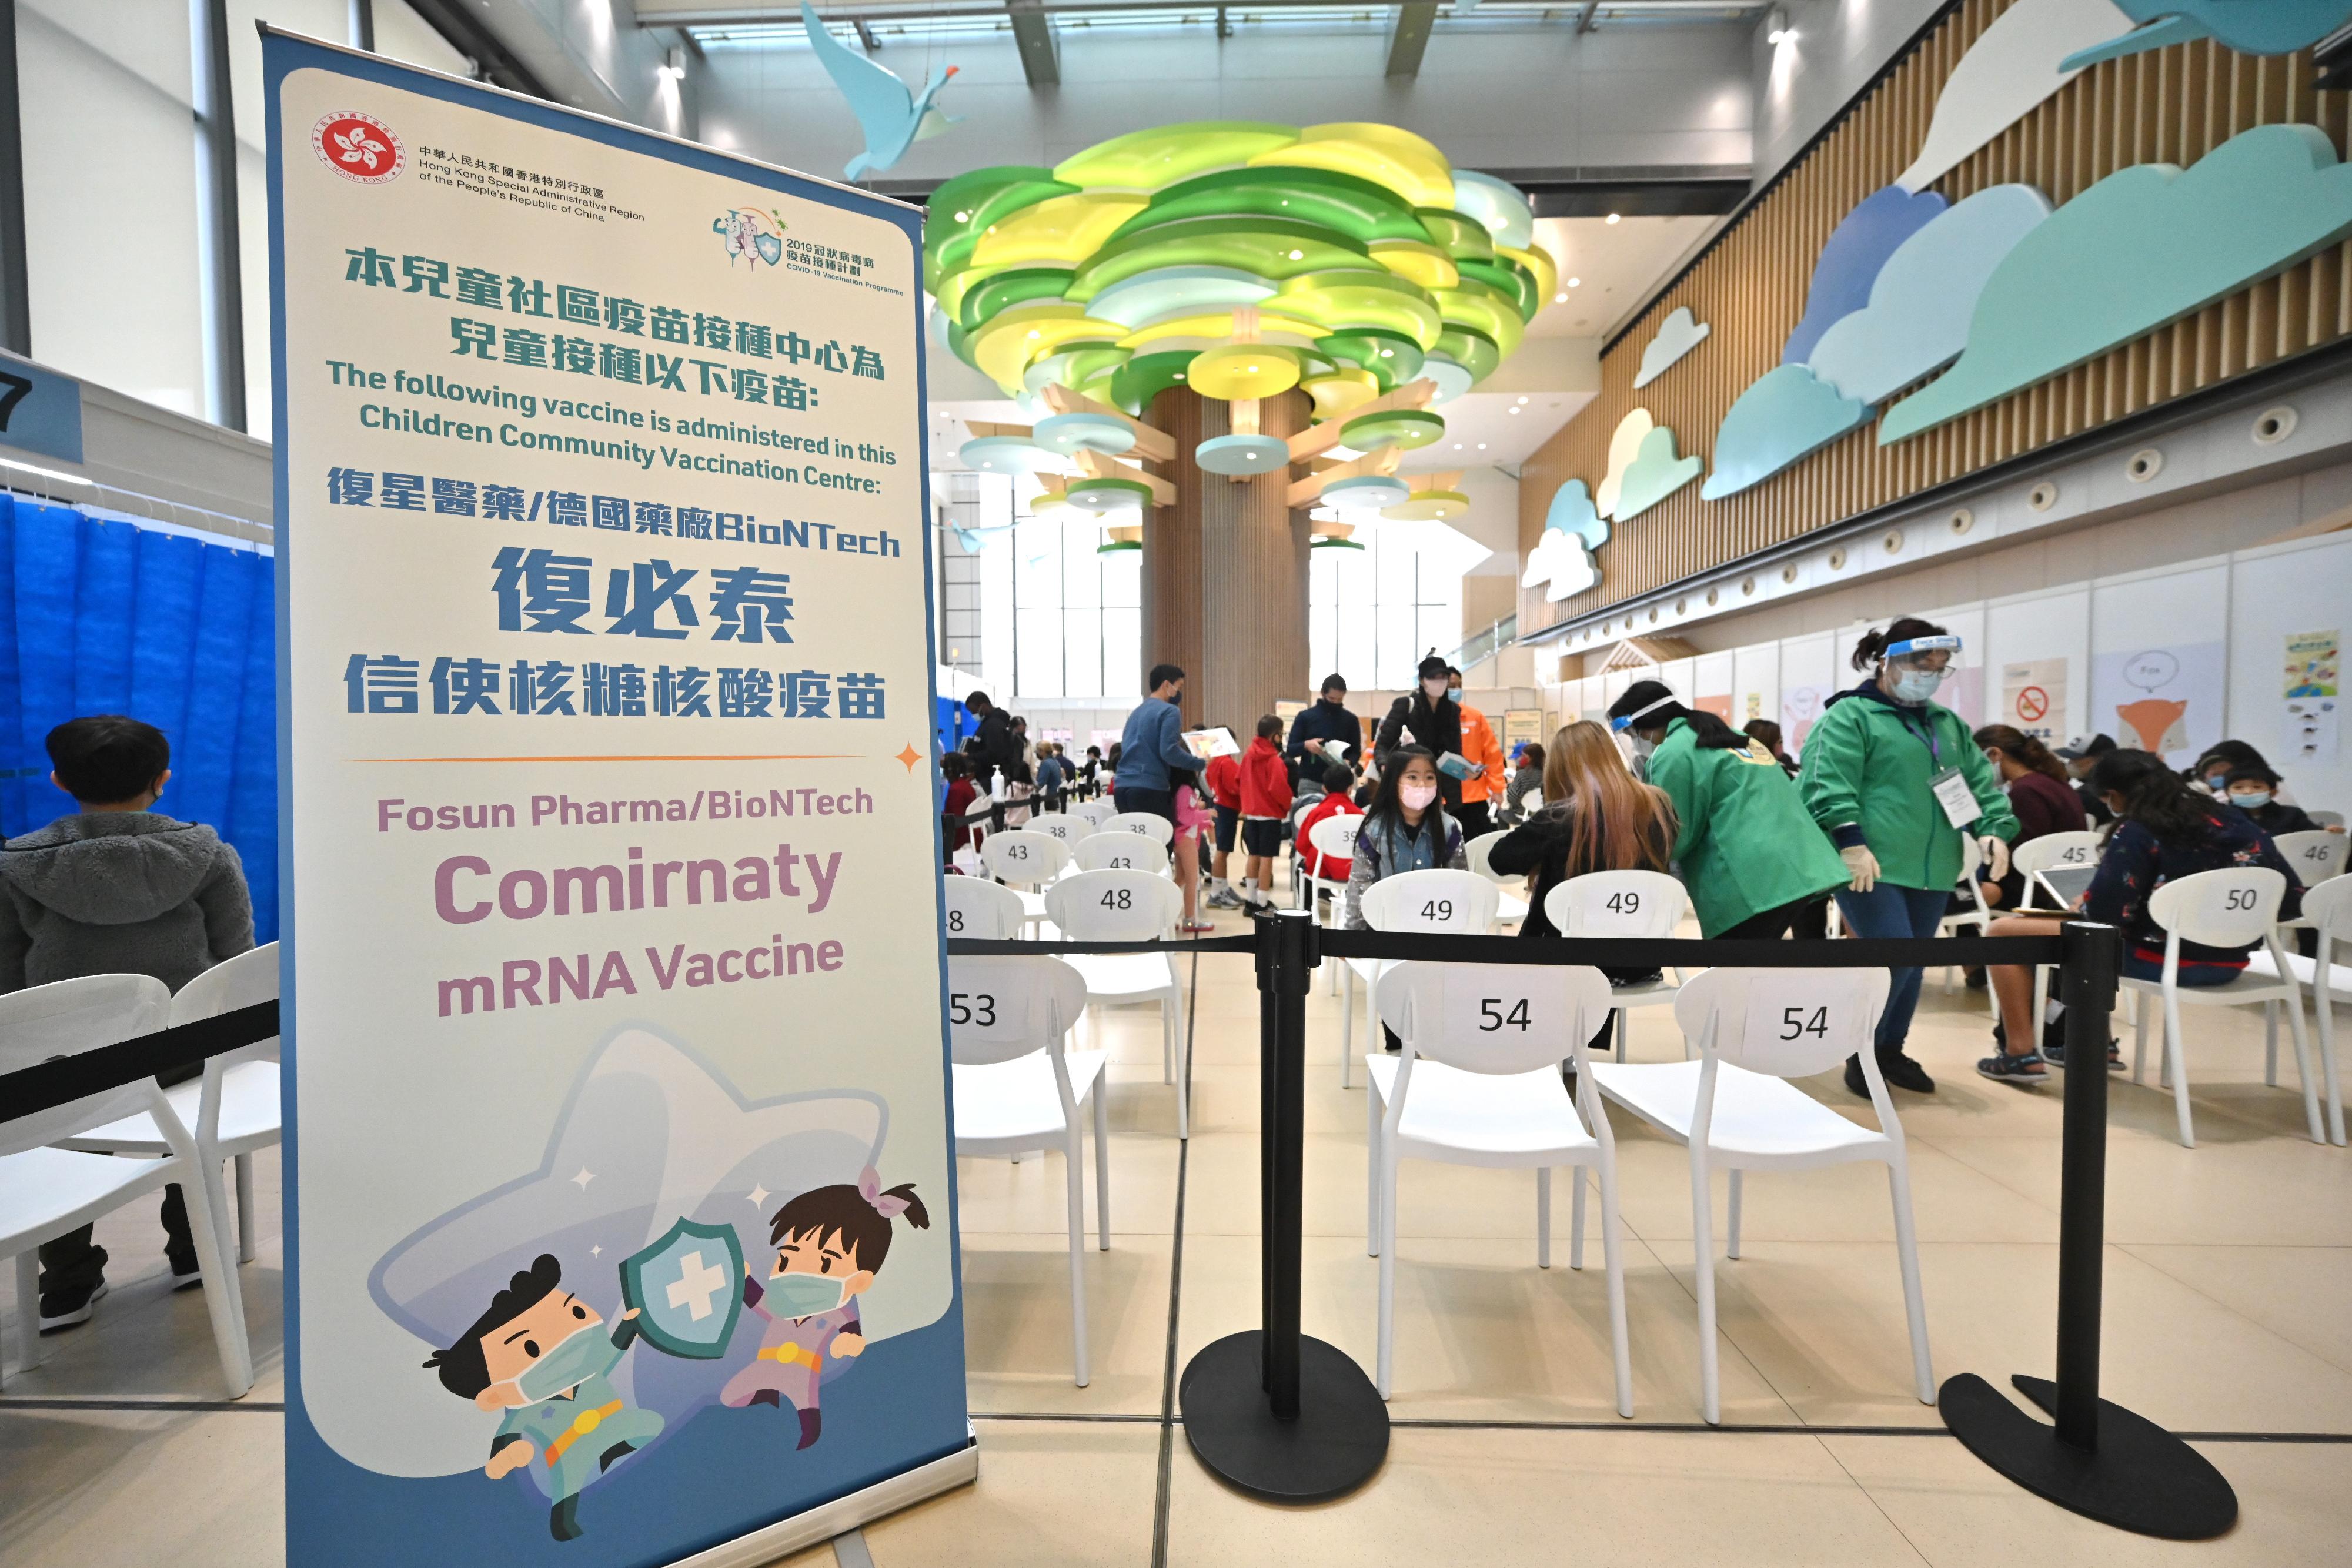 位於九龍灣的香港兒童醫院的兒童社區疫苗接種中心今日（二月十六日）投入服務，為五至十一歲的兒童接種復必泰疫苗。圖示在接種等候區的兒童和陪同的家長／監護人。